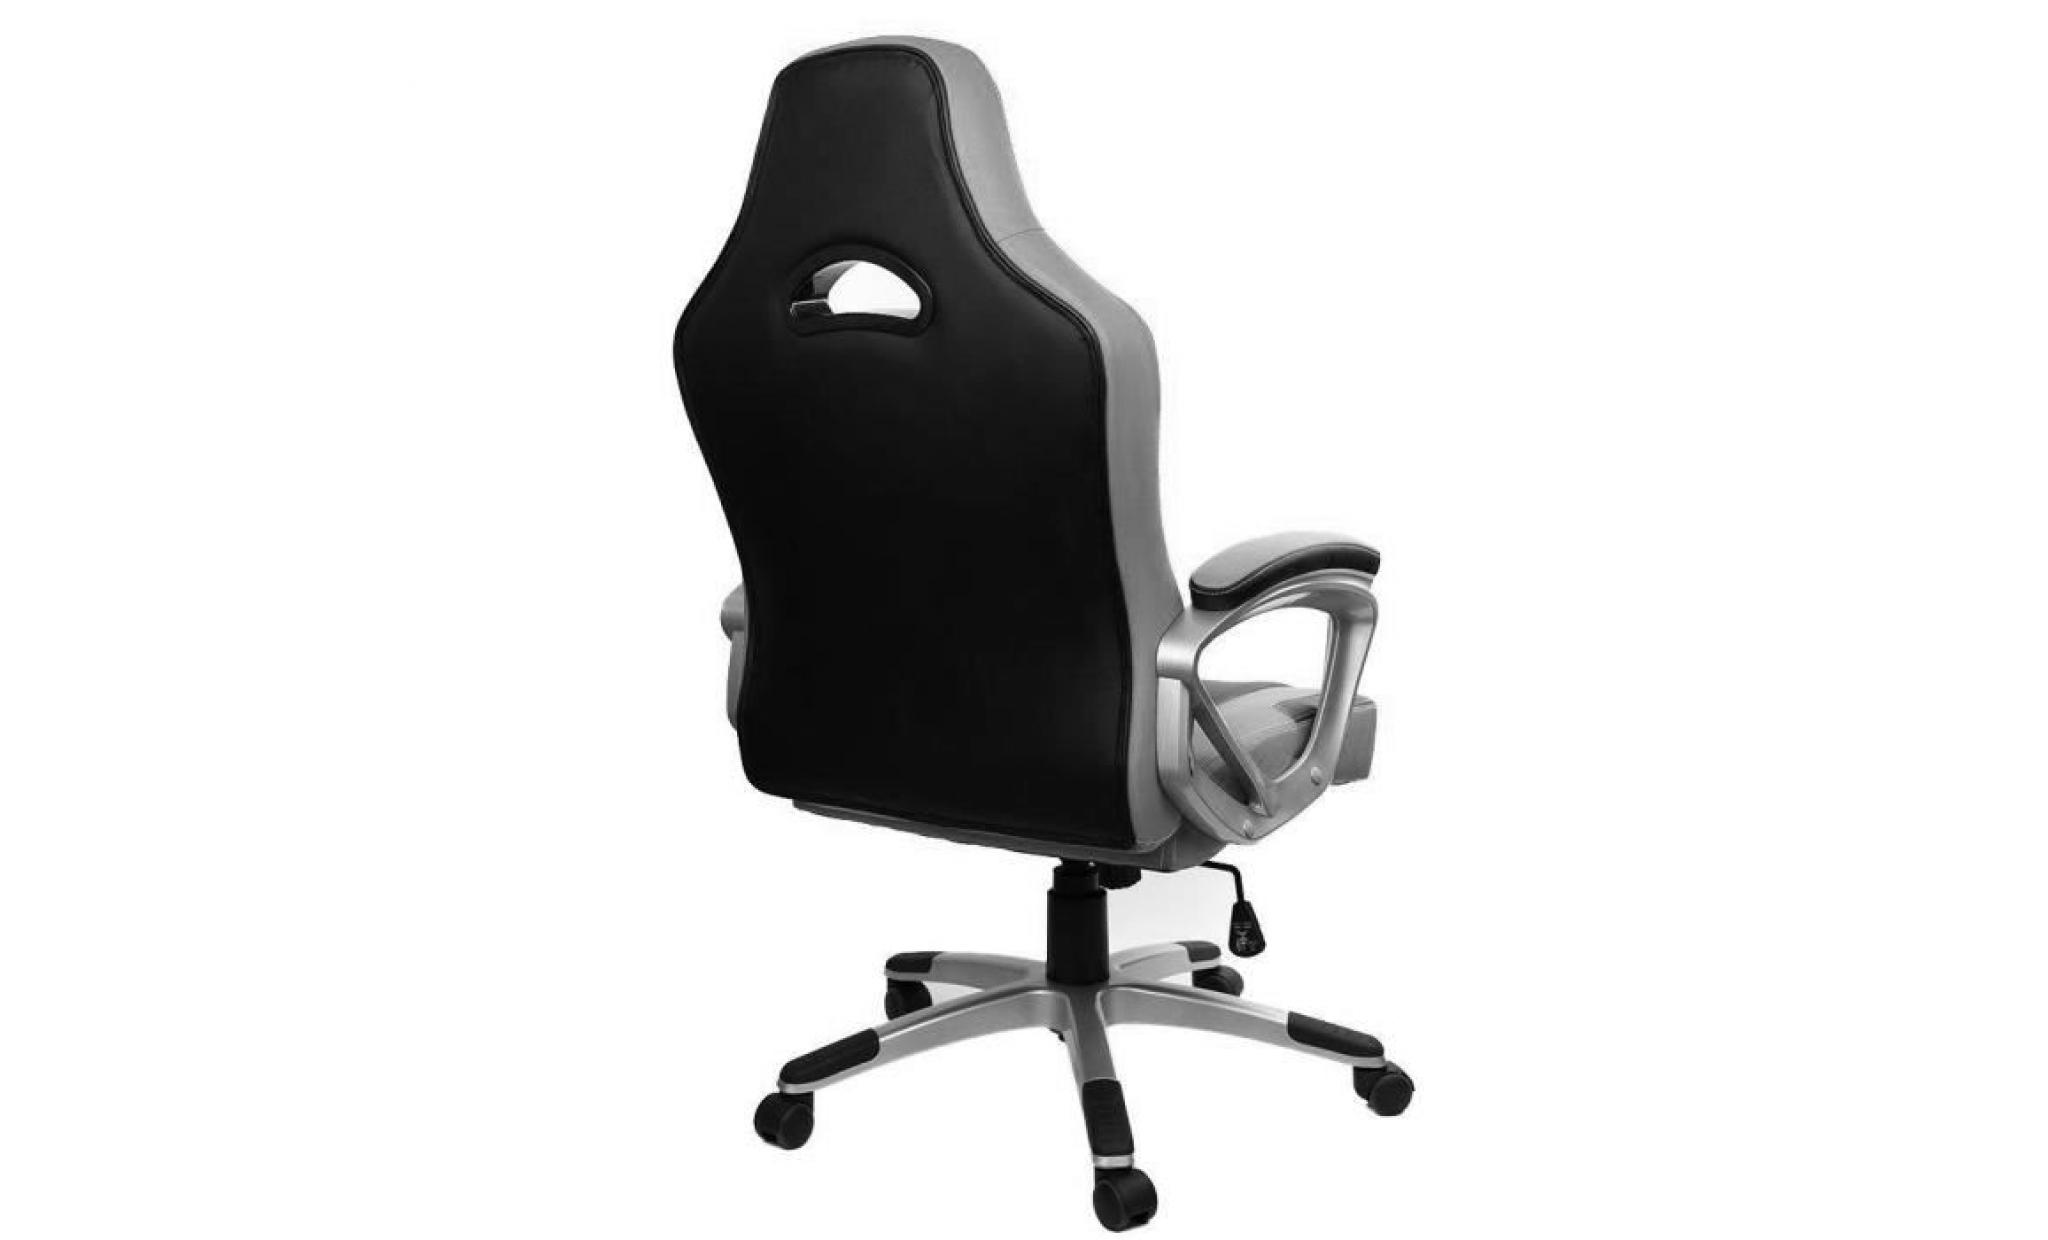 chaise gamer   racing chaise de bureau pu   gaming chaise   fauteuil de  bureau   hauteur réglable   vert / noir   intimate wm heat pas cher